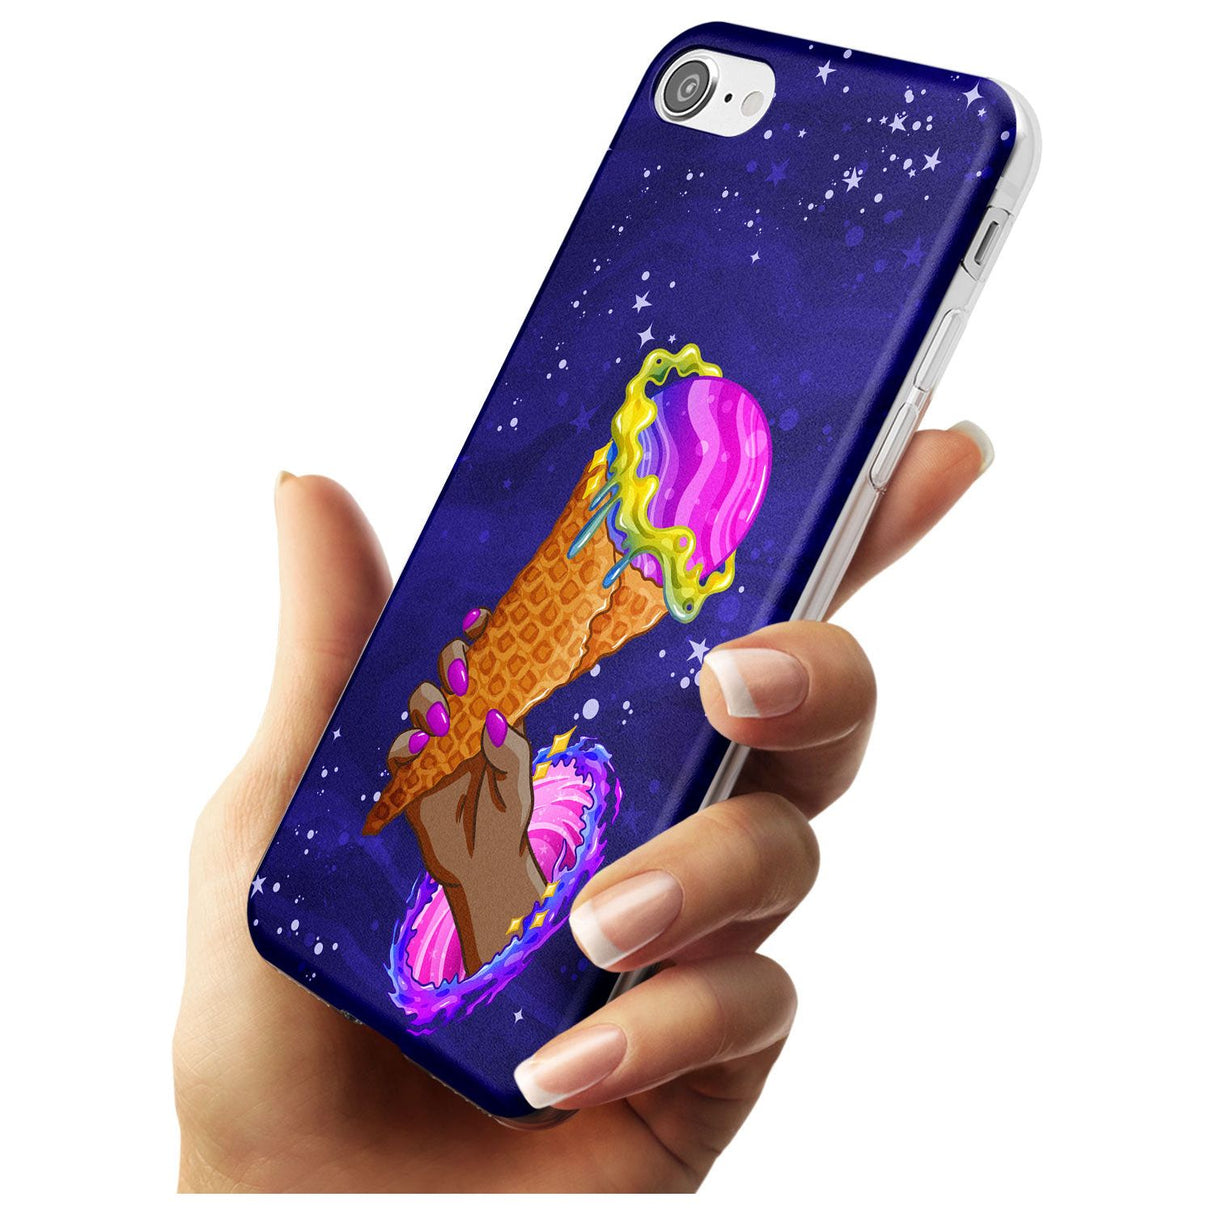 Interdimensional Ice Cream Slim TPU Phone Case for iPhone SE 8 7 Plus